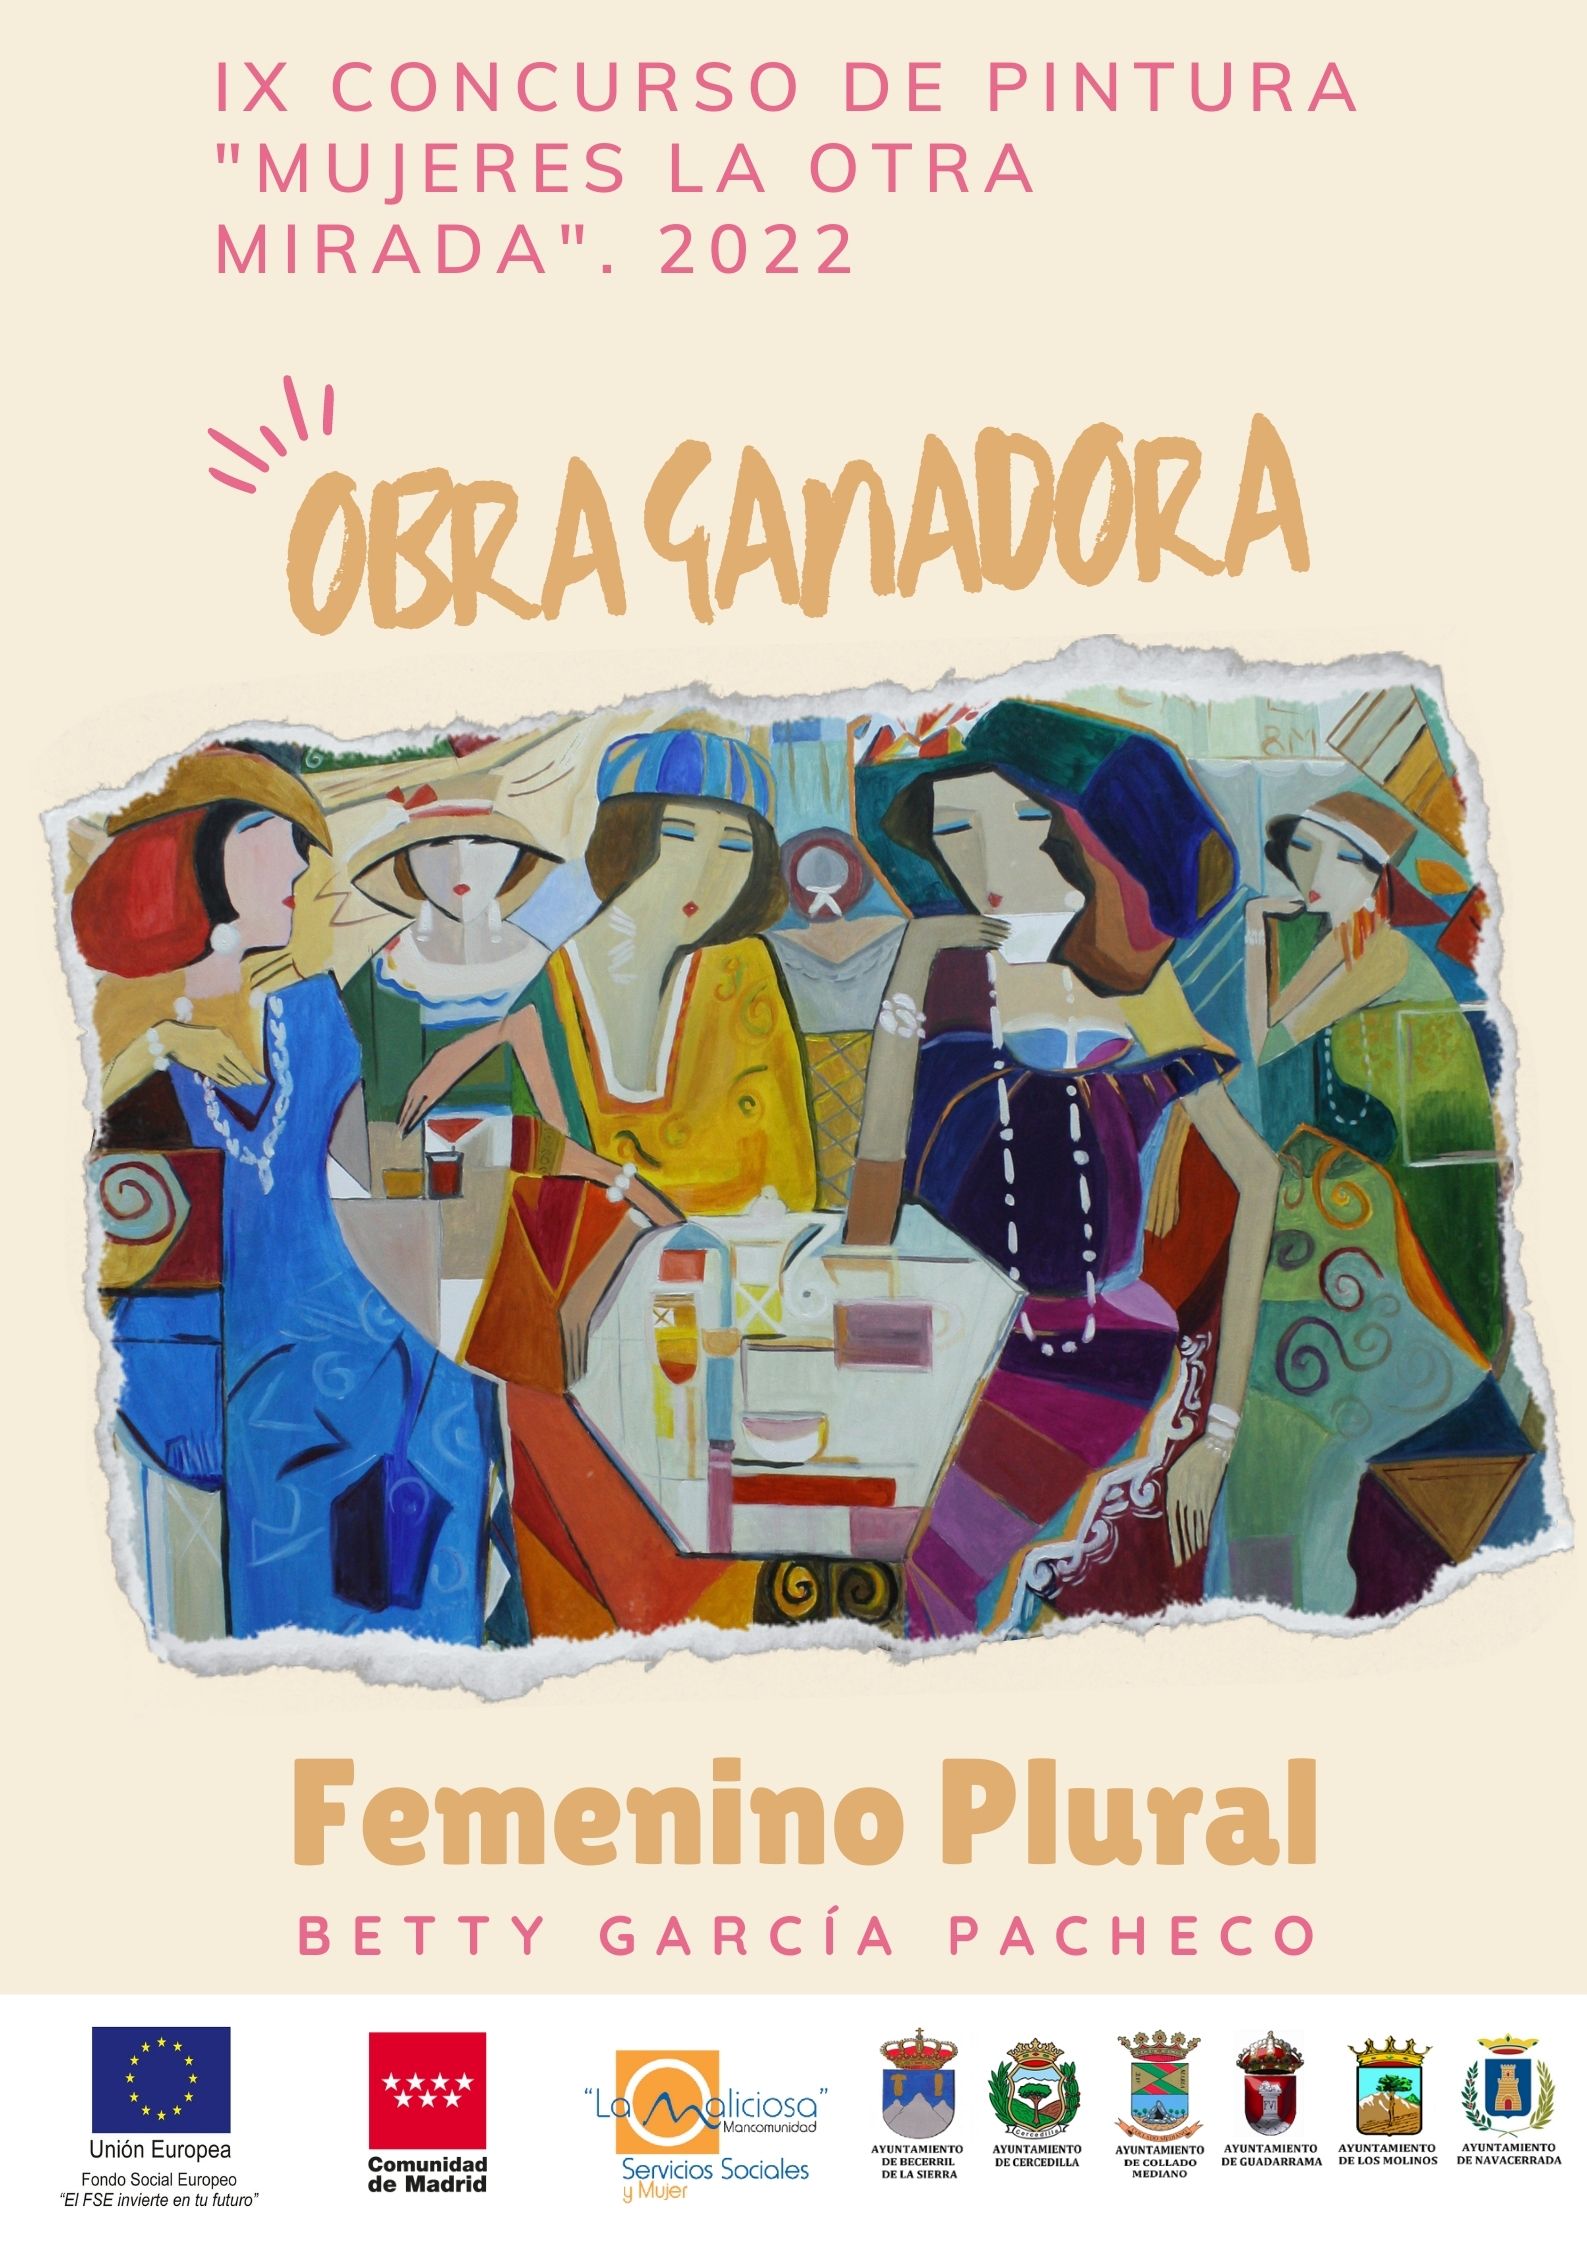 Obra ganadora IX concurso de pintura "mujeres la otra mirada"